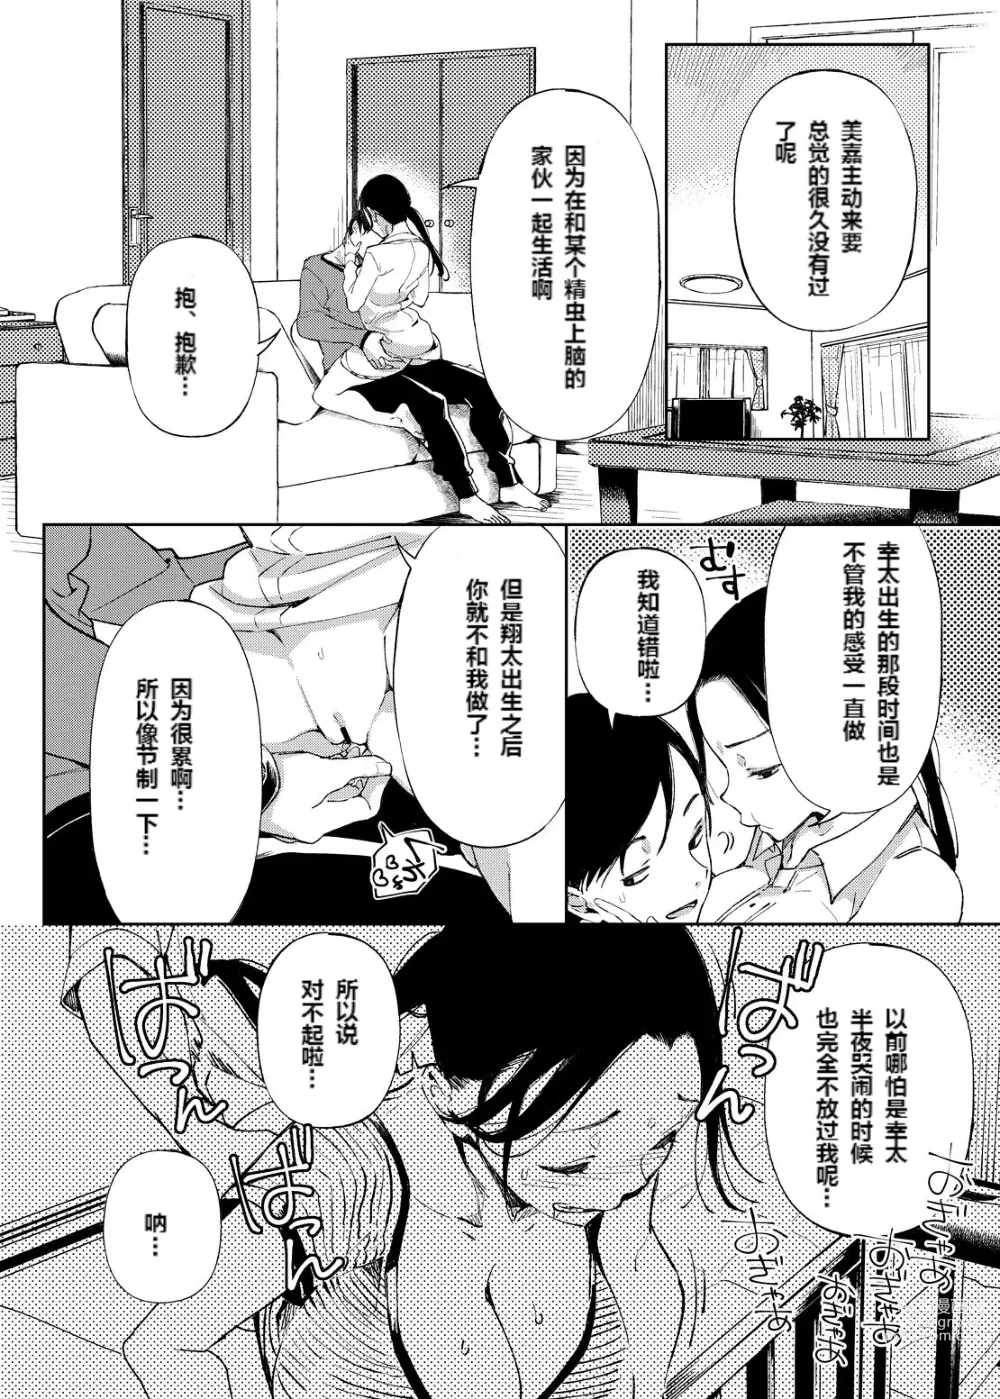 Page 156 of doujinshi Chichi Showtime!